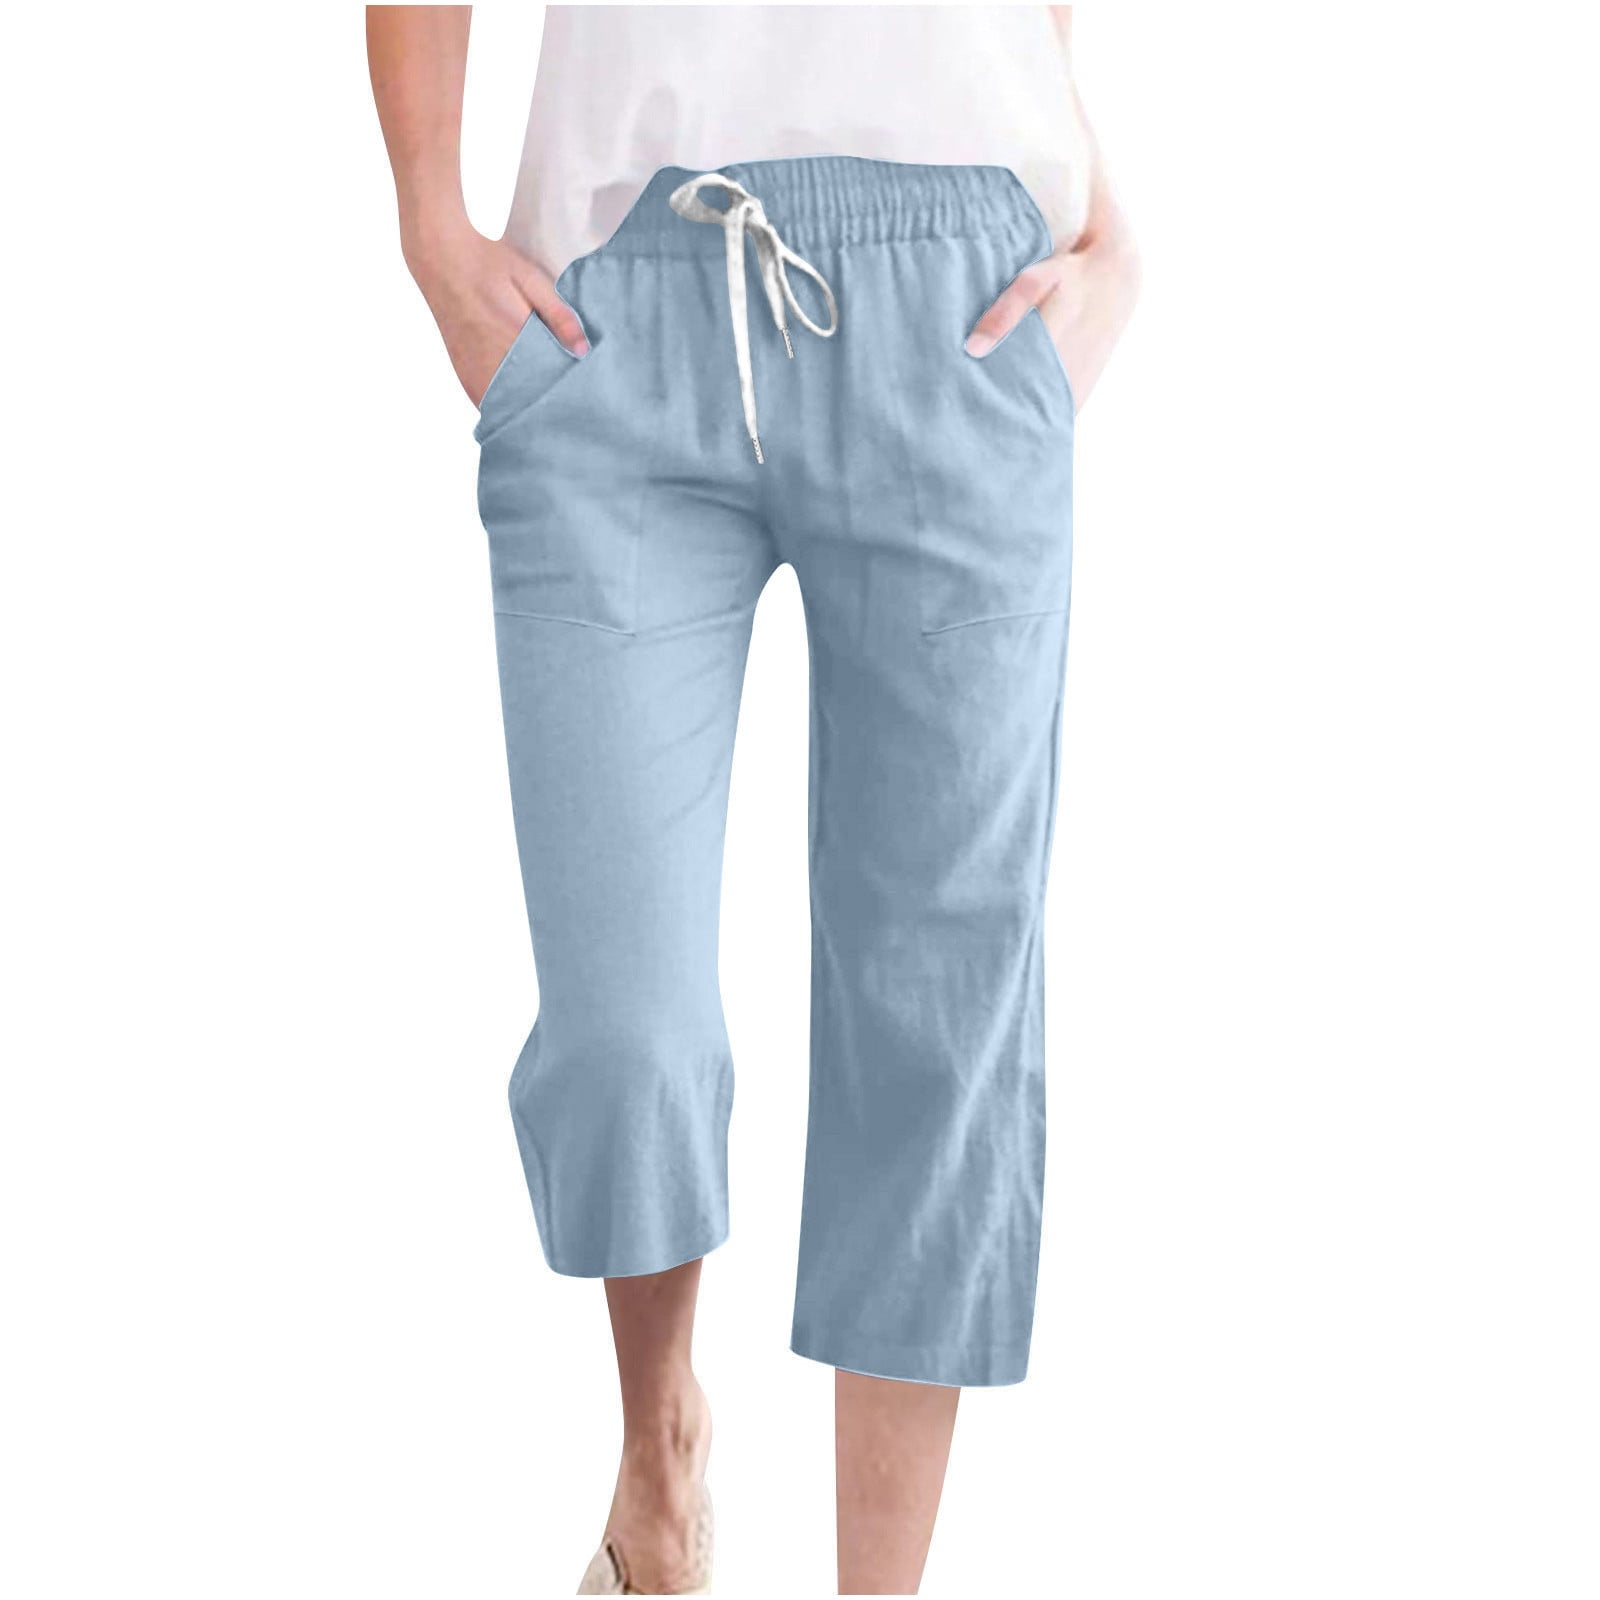 BLTIBY Women's Cotton Linen Capri Pants Summer Solid Color Drawstring ...